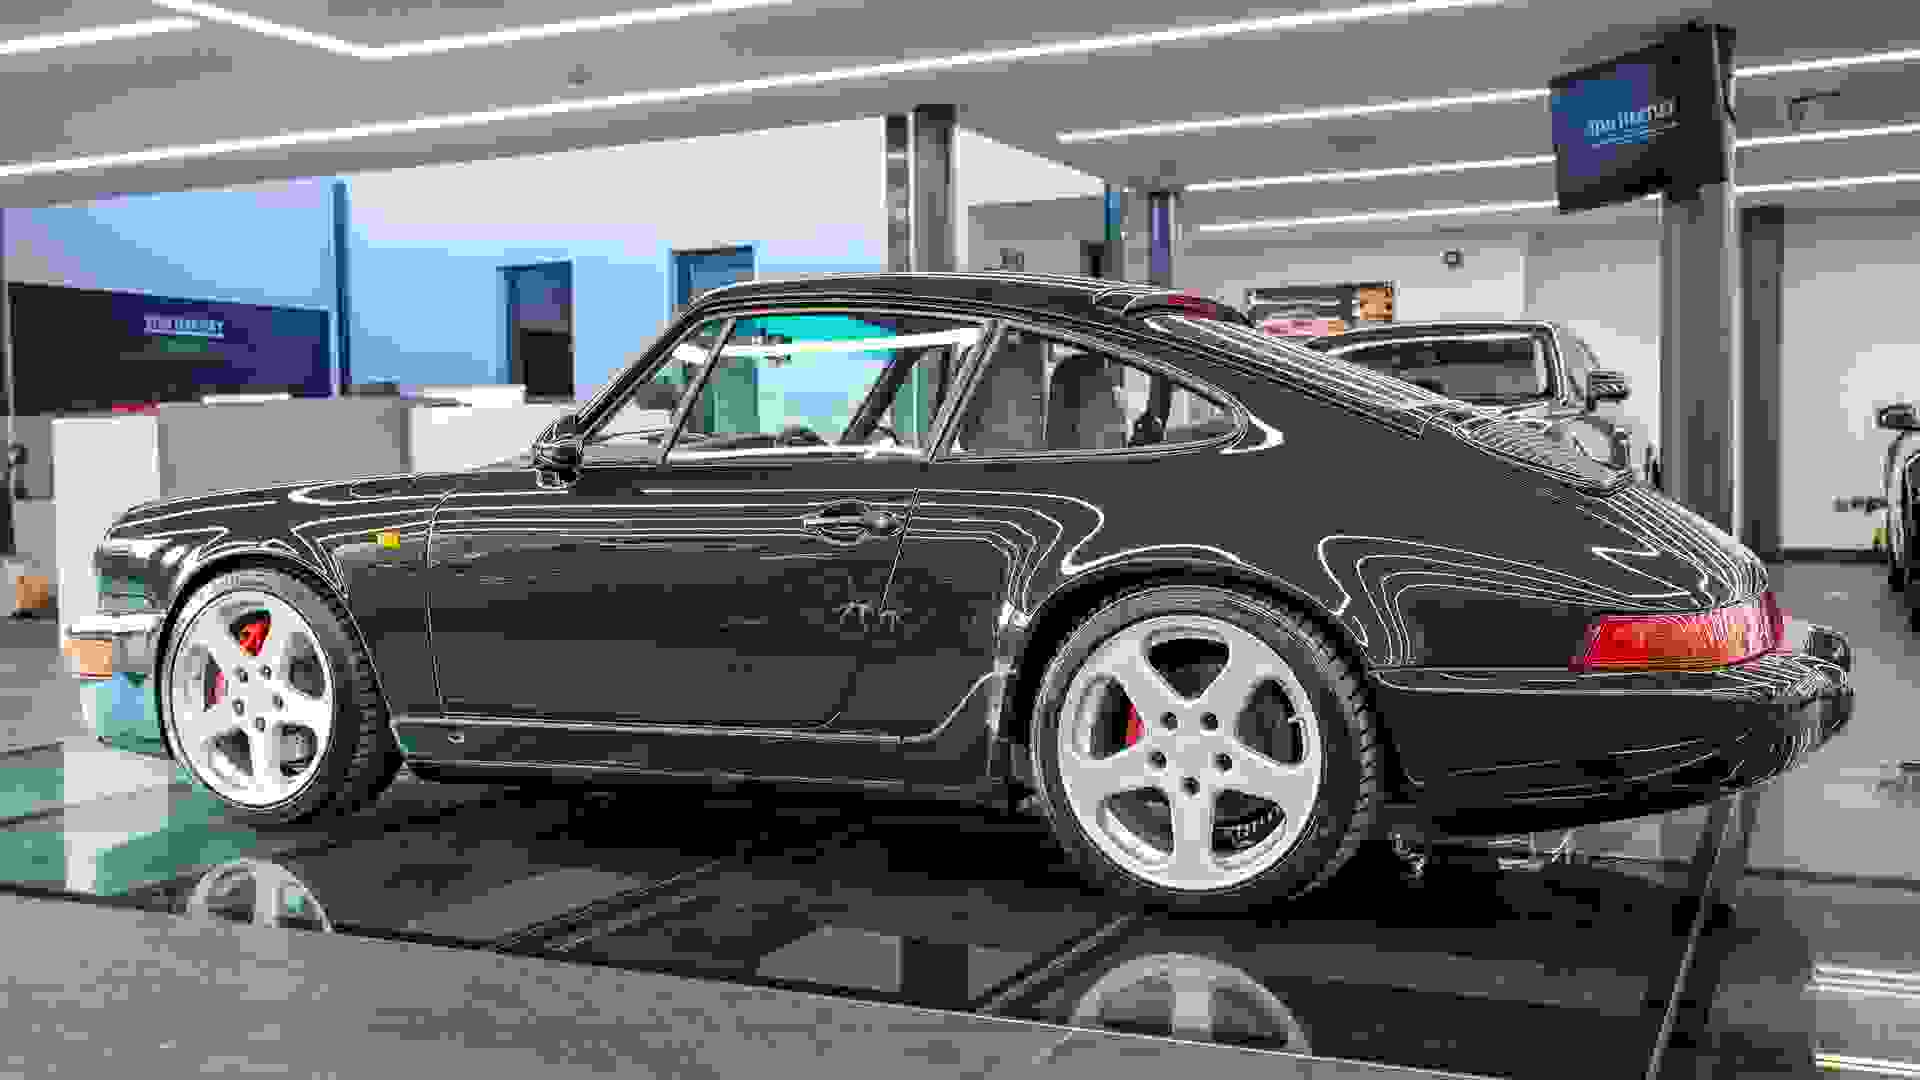 Porsche 911 Photo 9bc39b8b-4e0e-4337-a97b-50436d4d6b7e.jpg